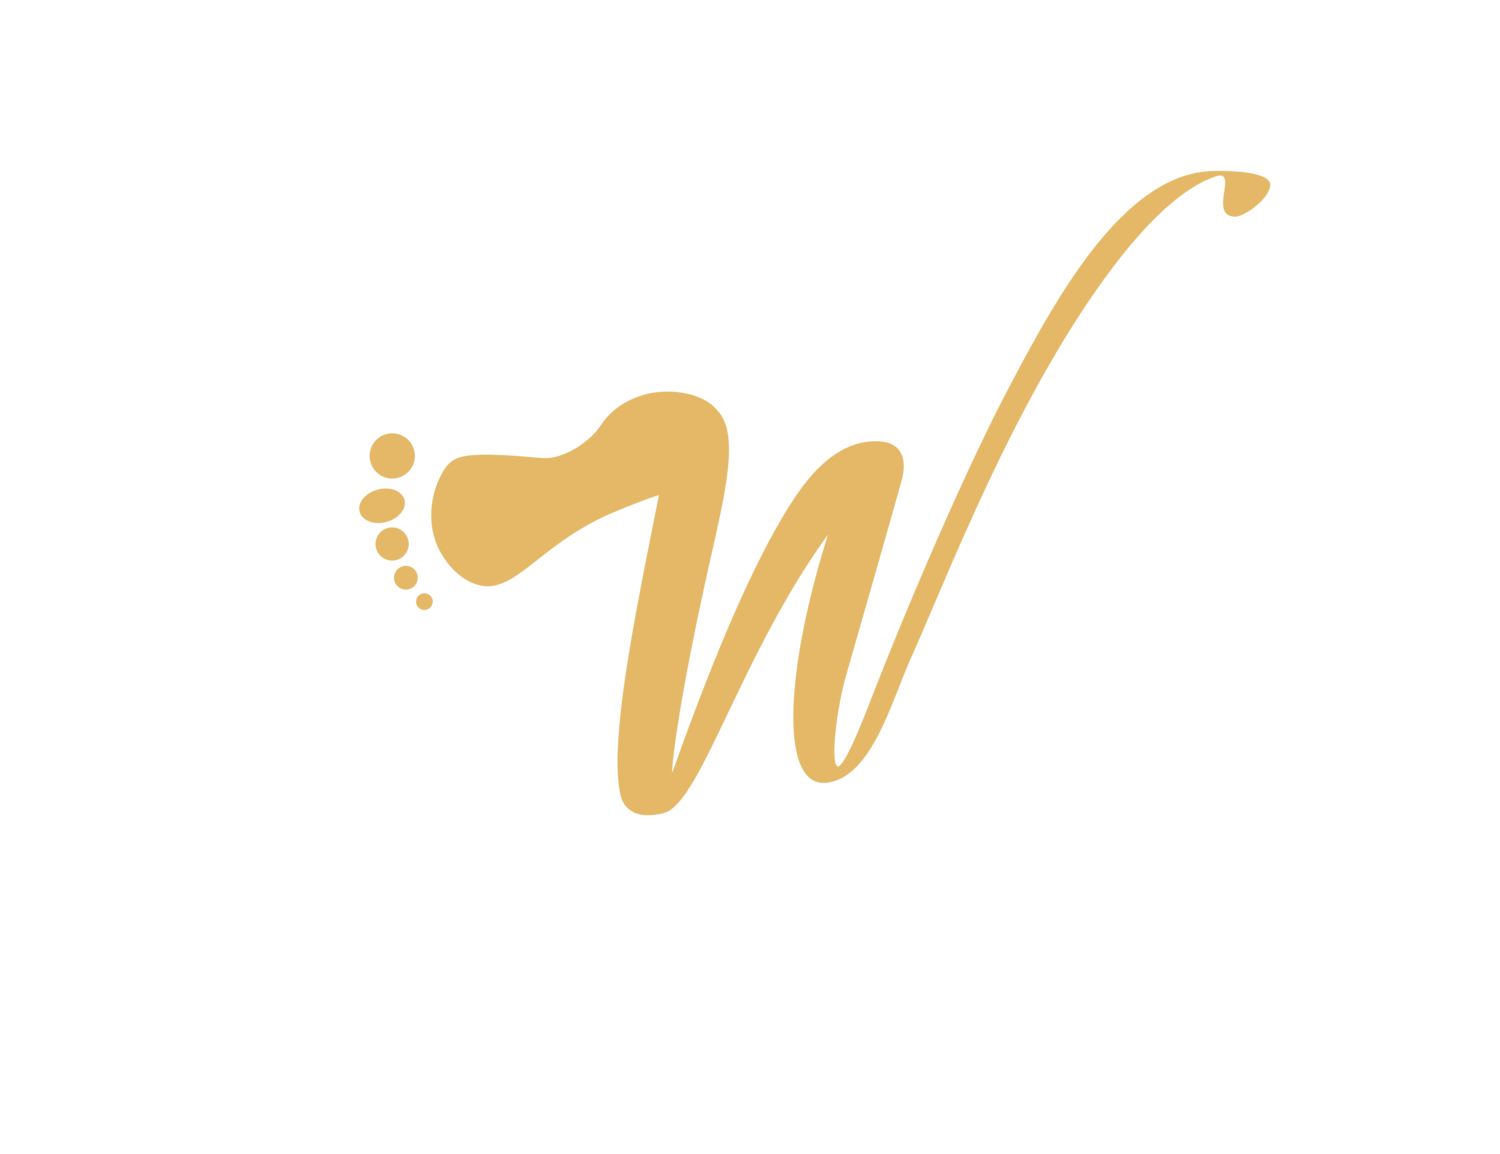 WELLNESS FOOT SPA